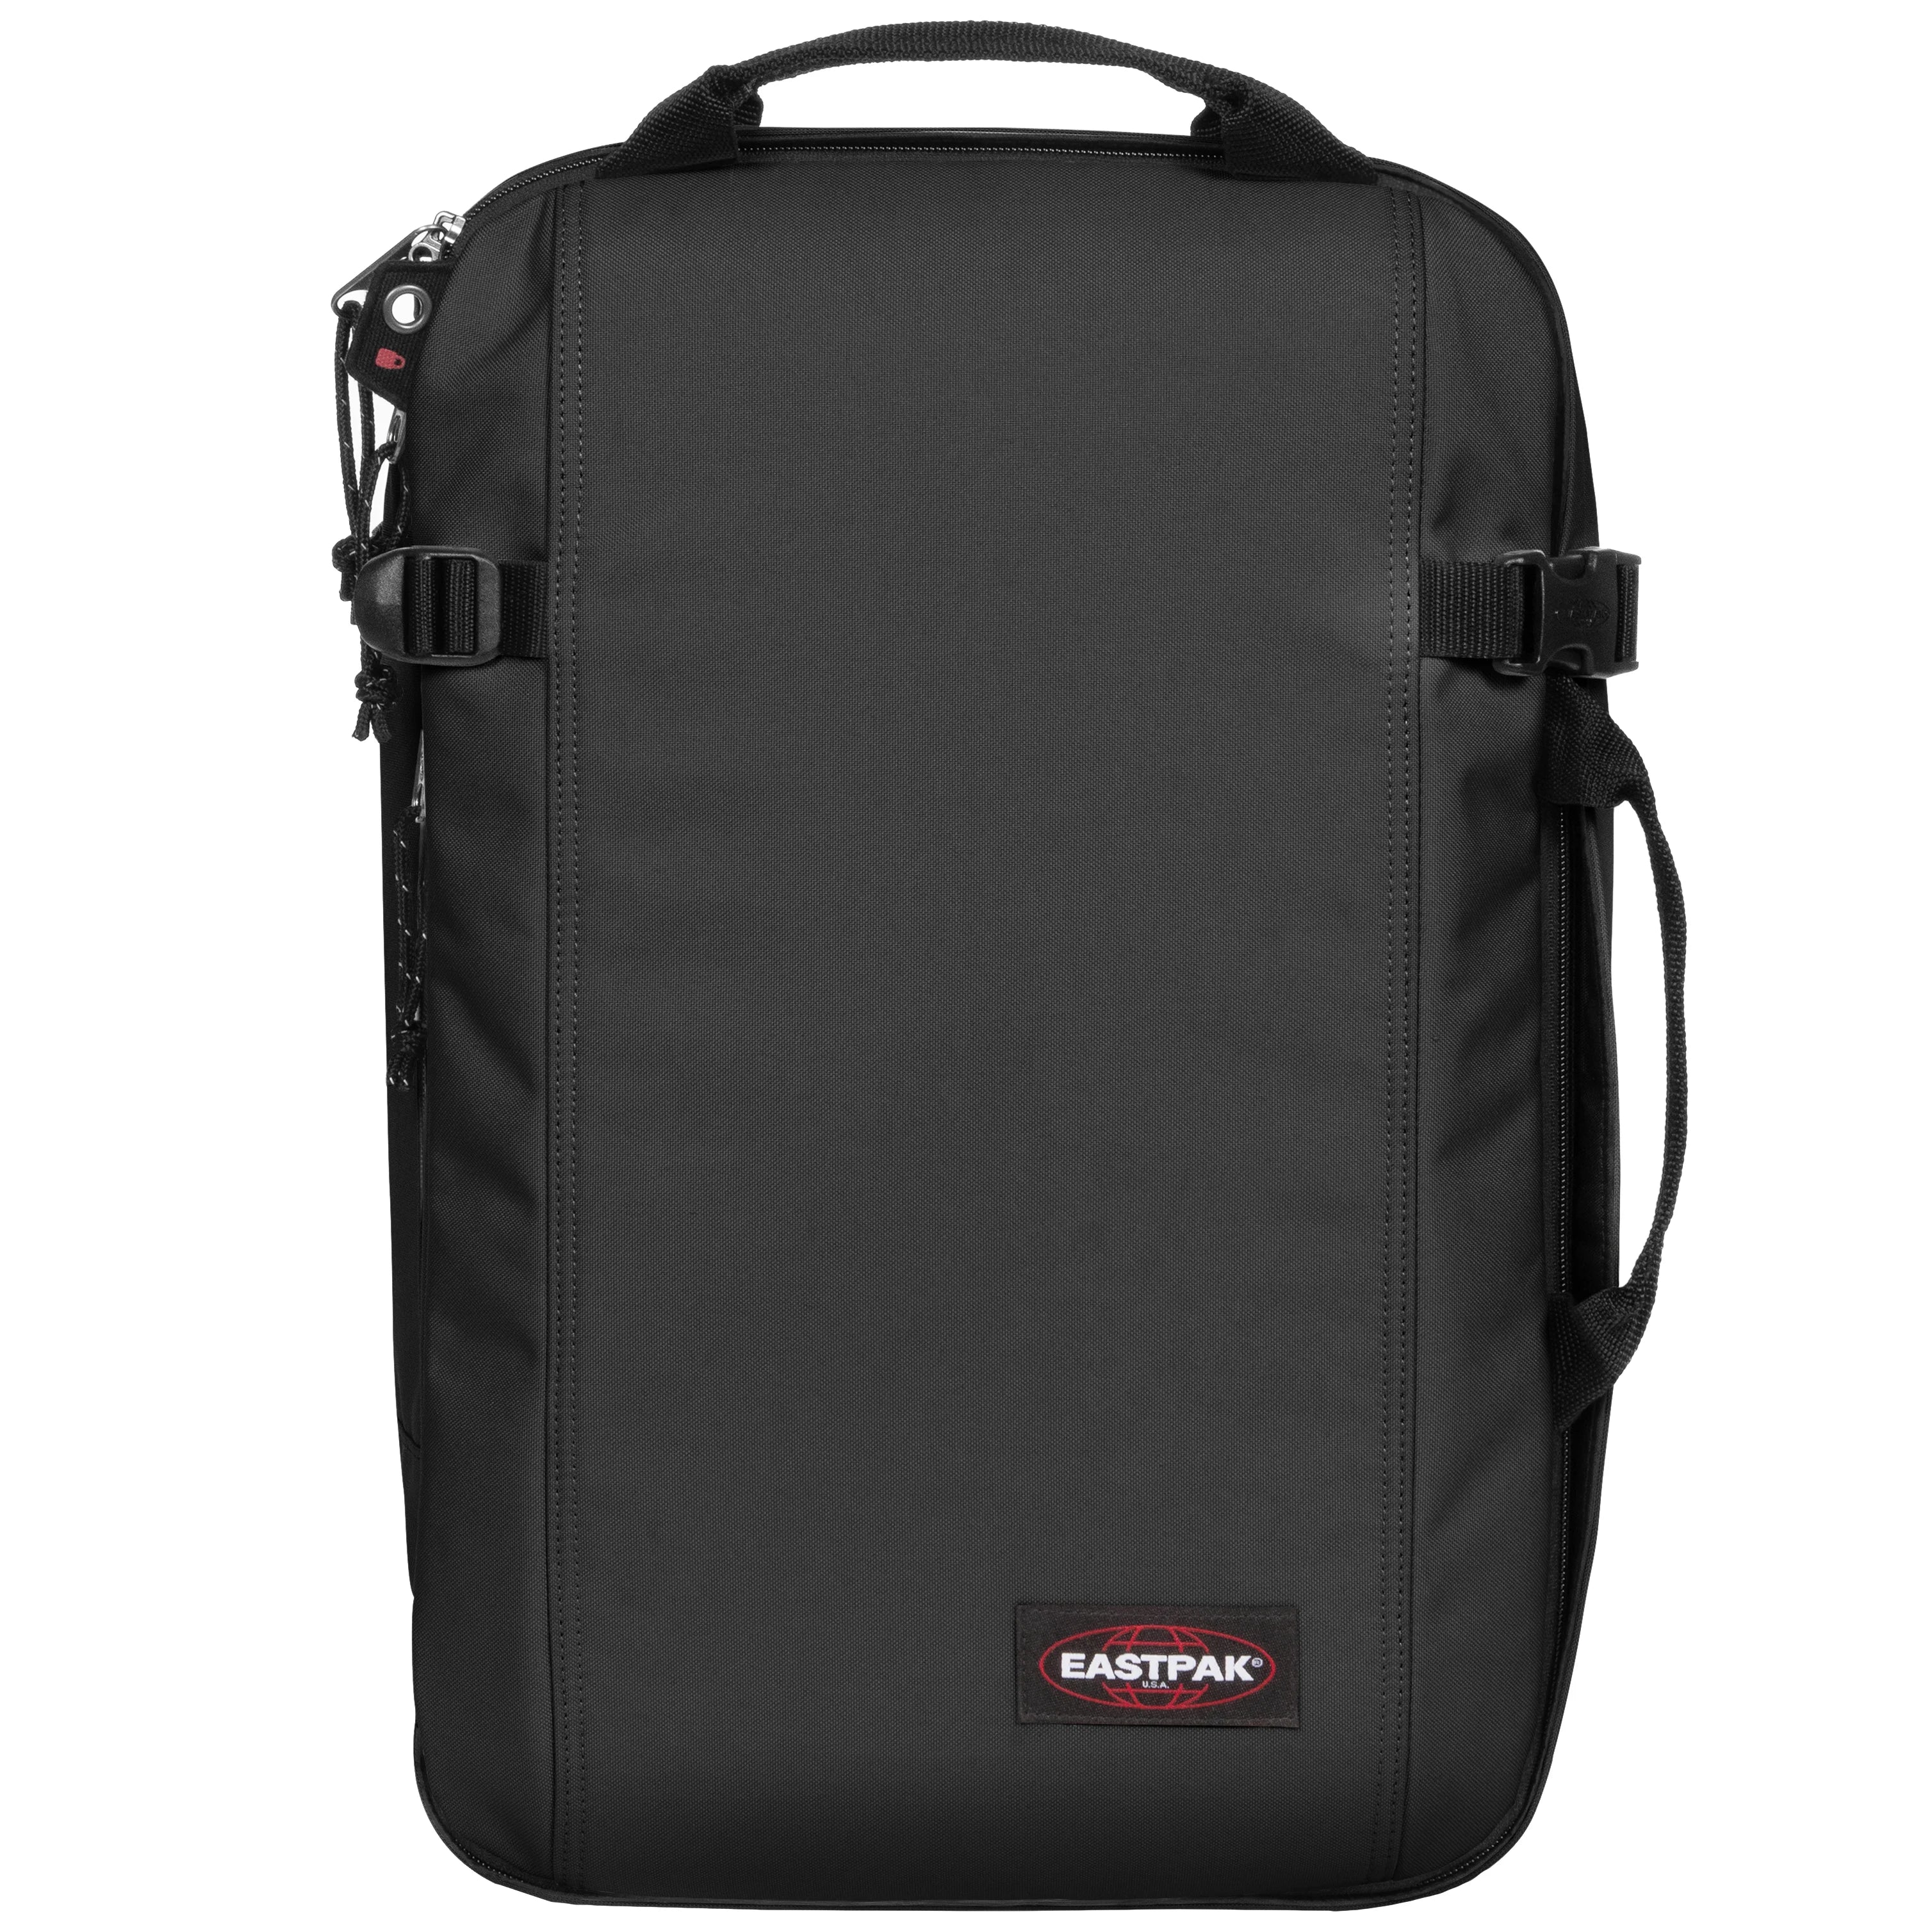 Eastpak Authentic Travel Morepack Backpack 50 cm - Black